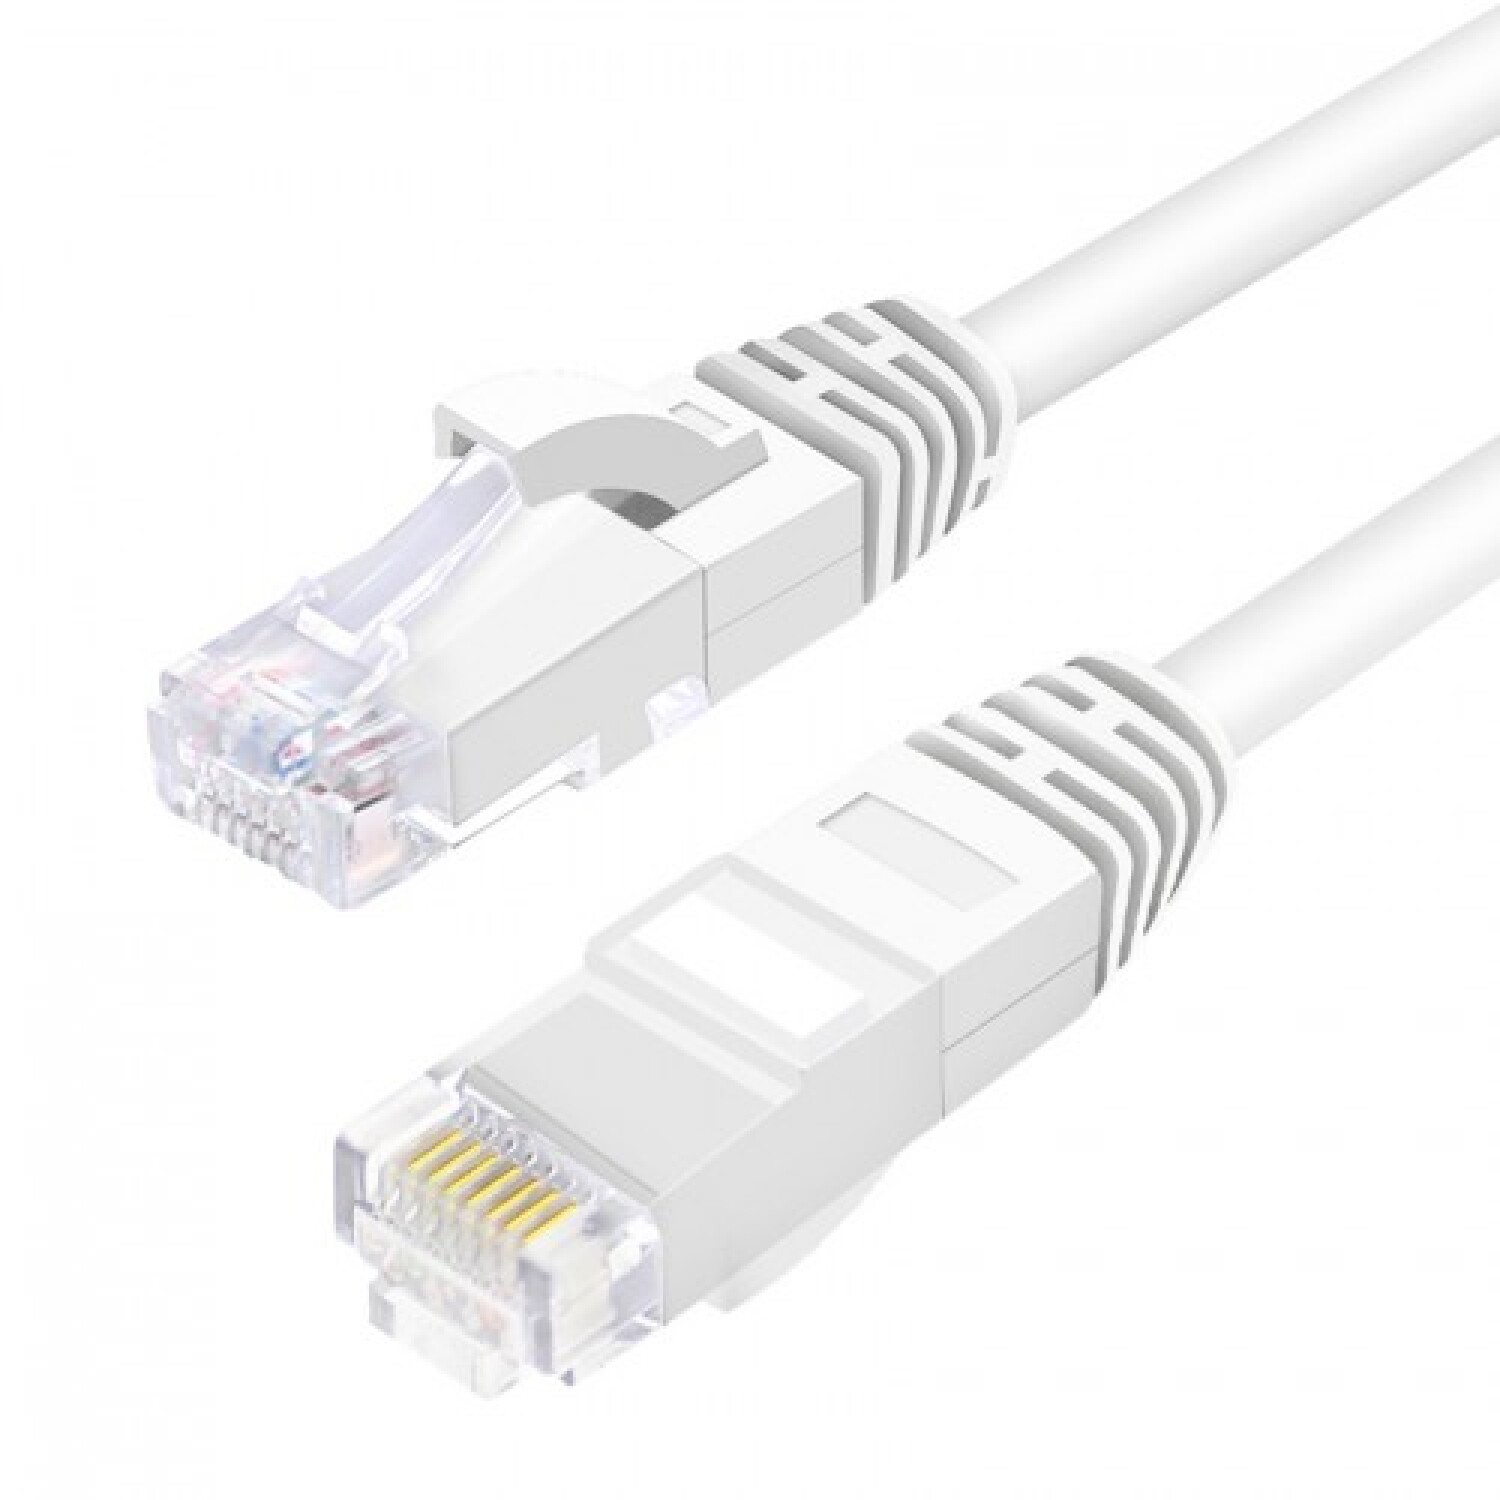 Cable De Red Internet Utp 20 Metros Cat 6 Alta Velocidad